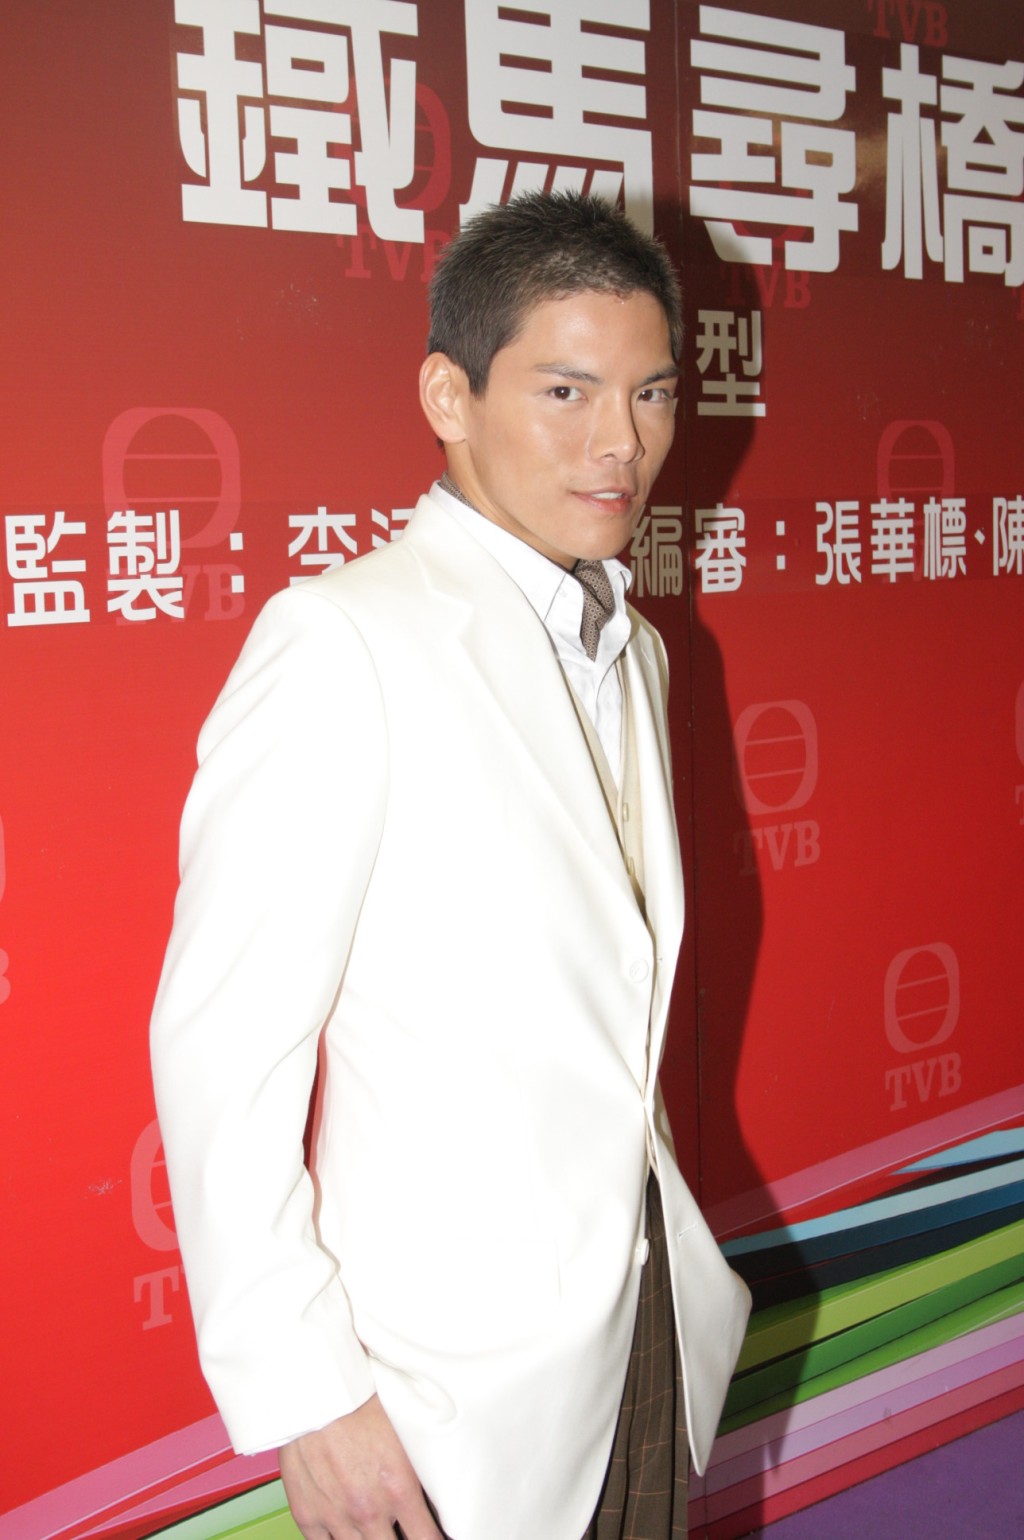 向佐曾经拍过TVB剧集。